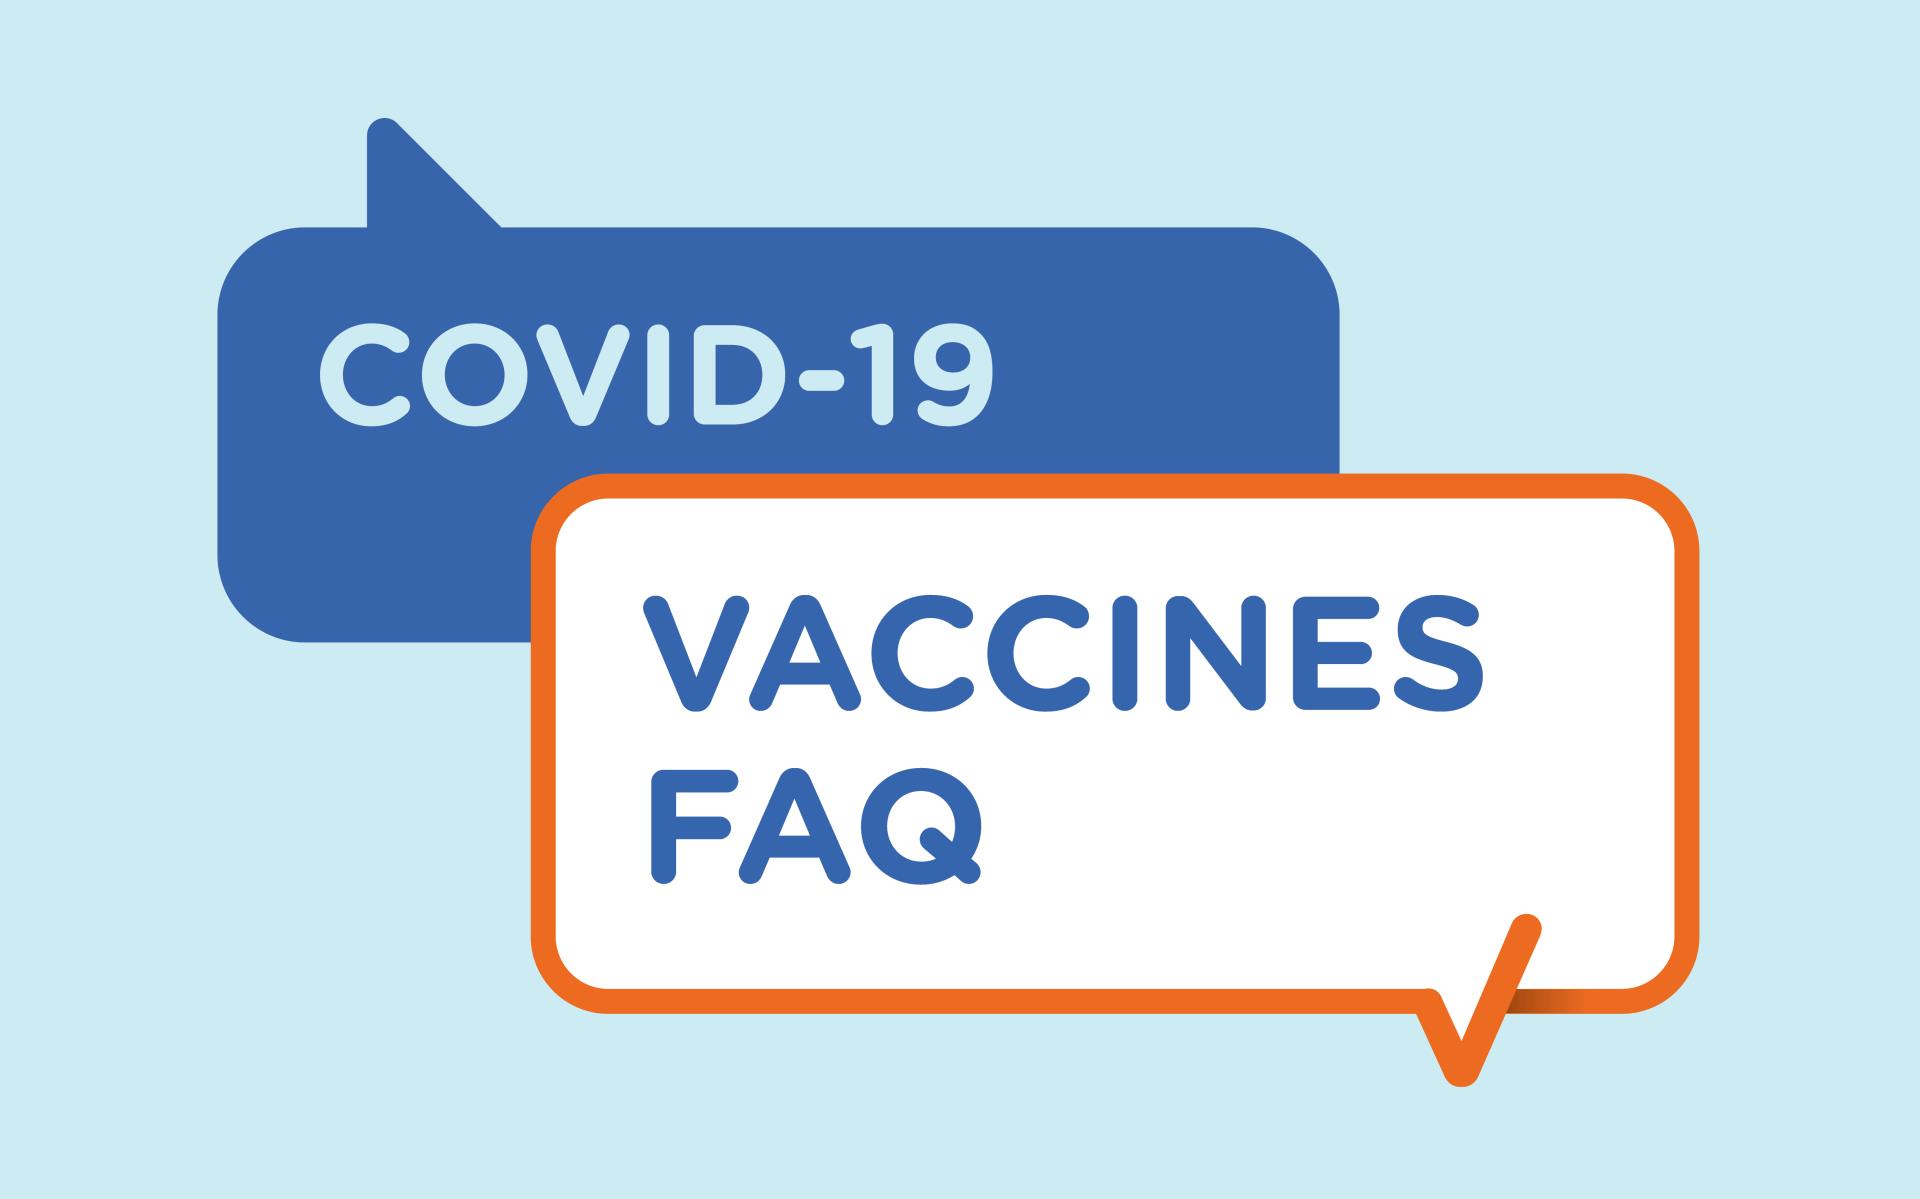 COVID-19 Vaccination FAQ Image